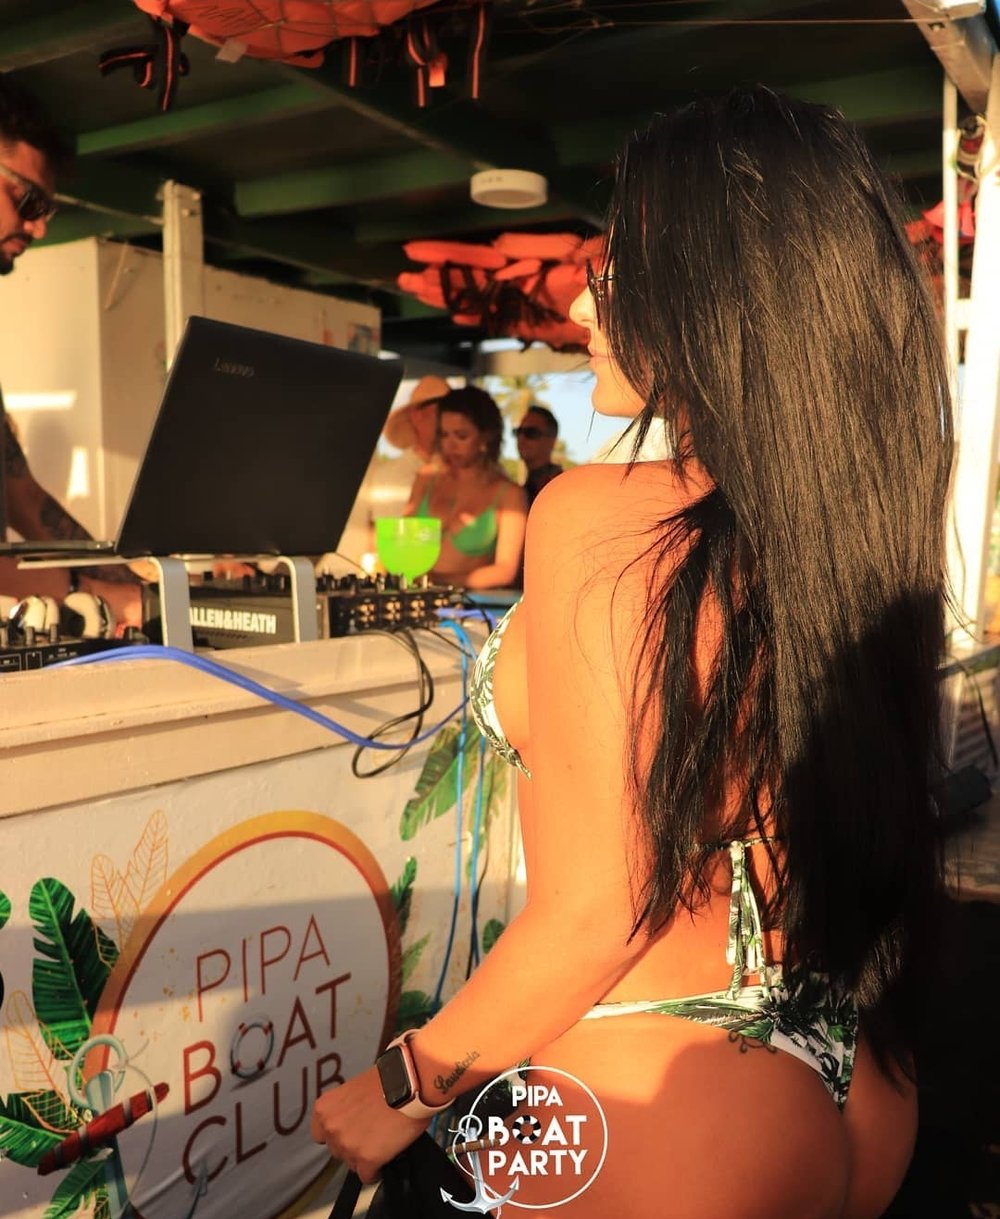 Festa no barco -  Pipa boat party